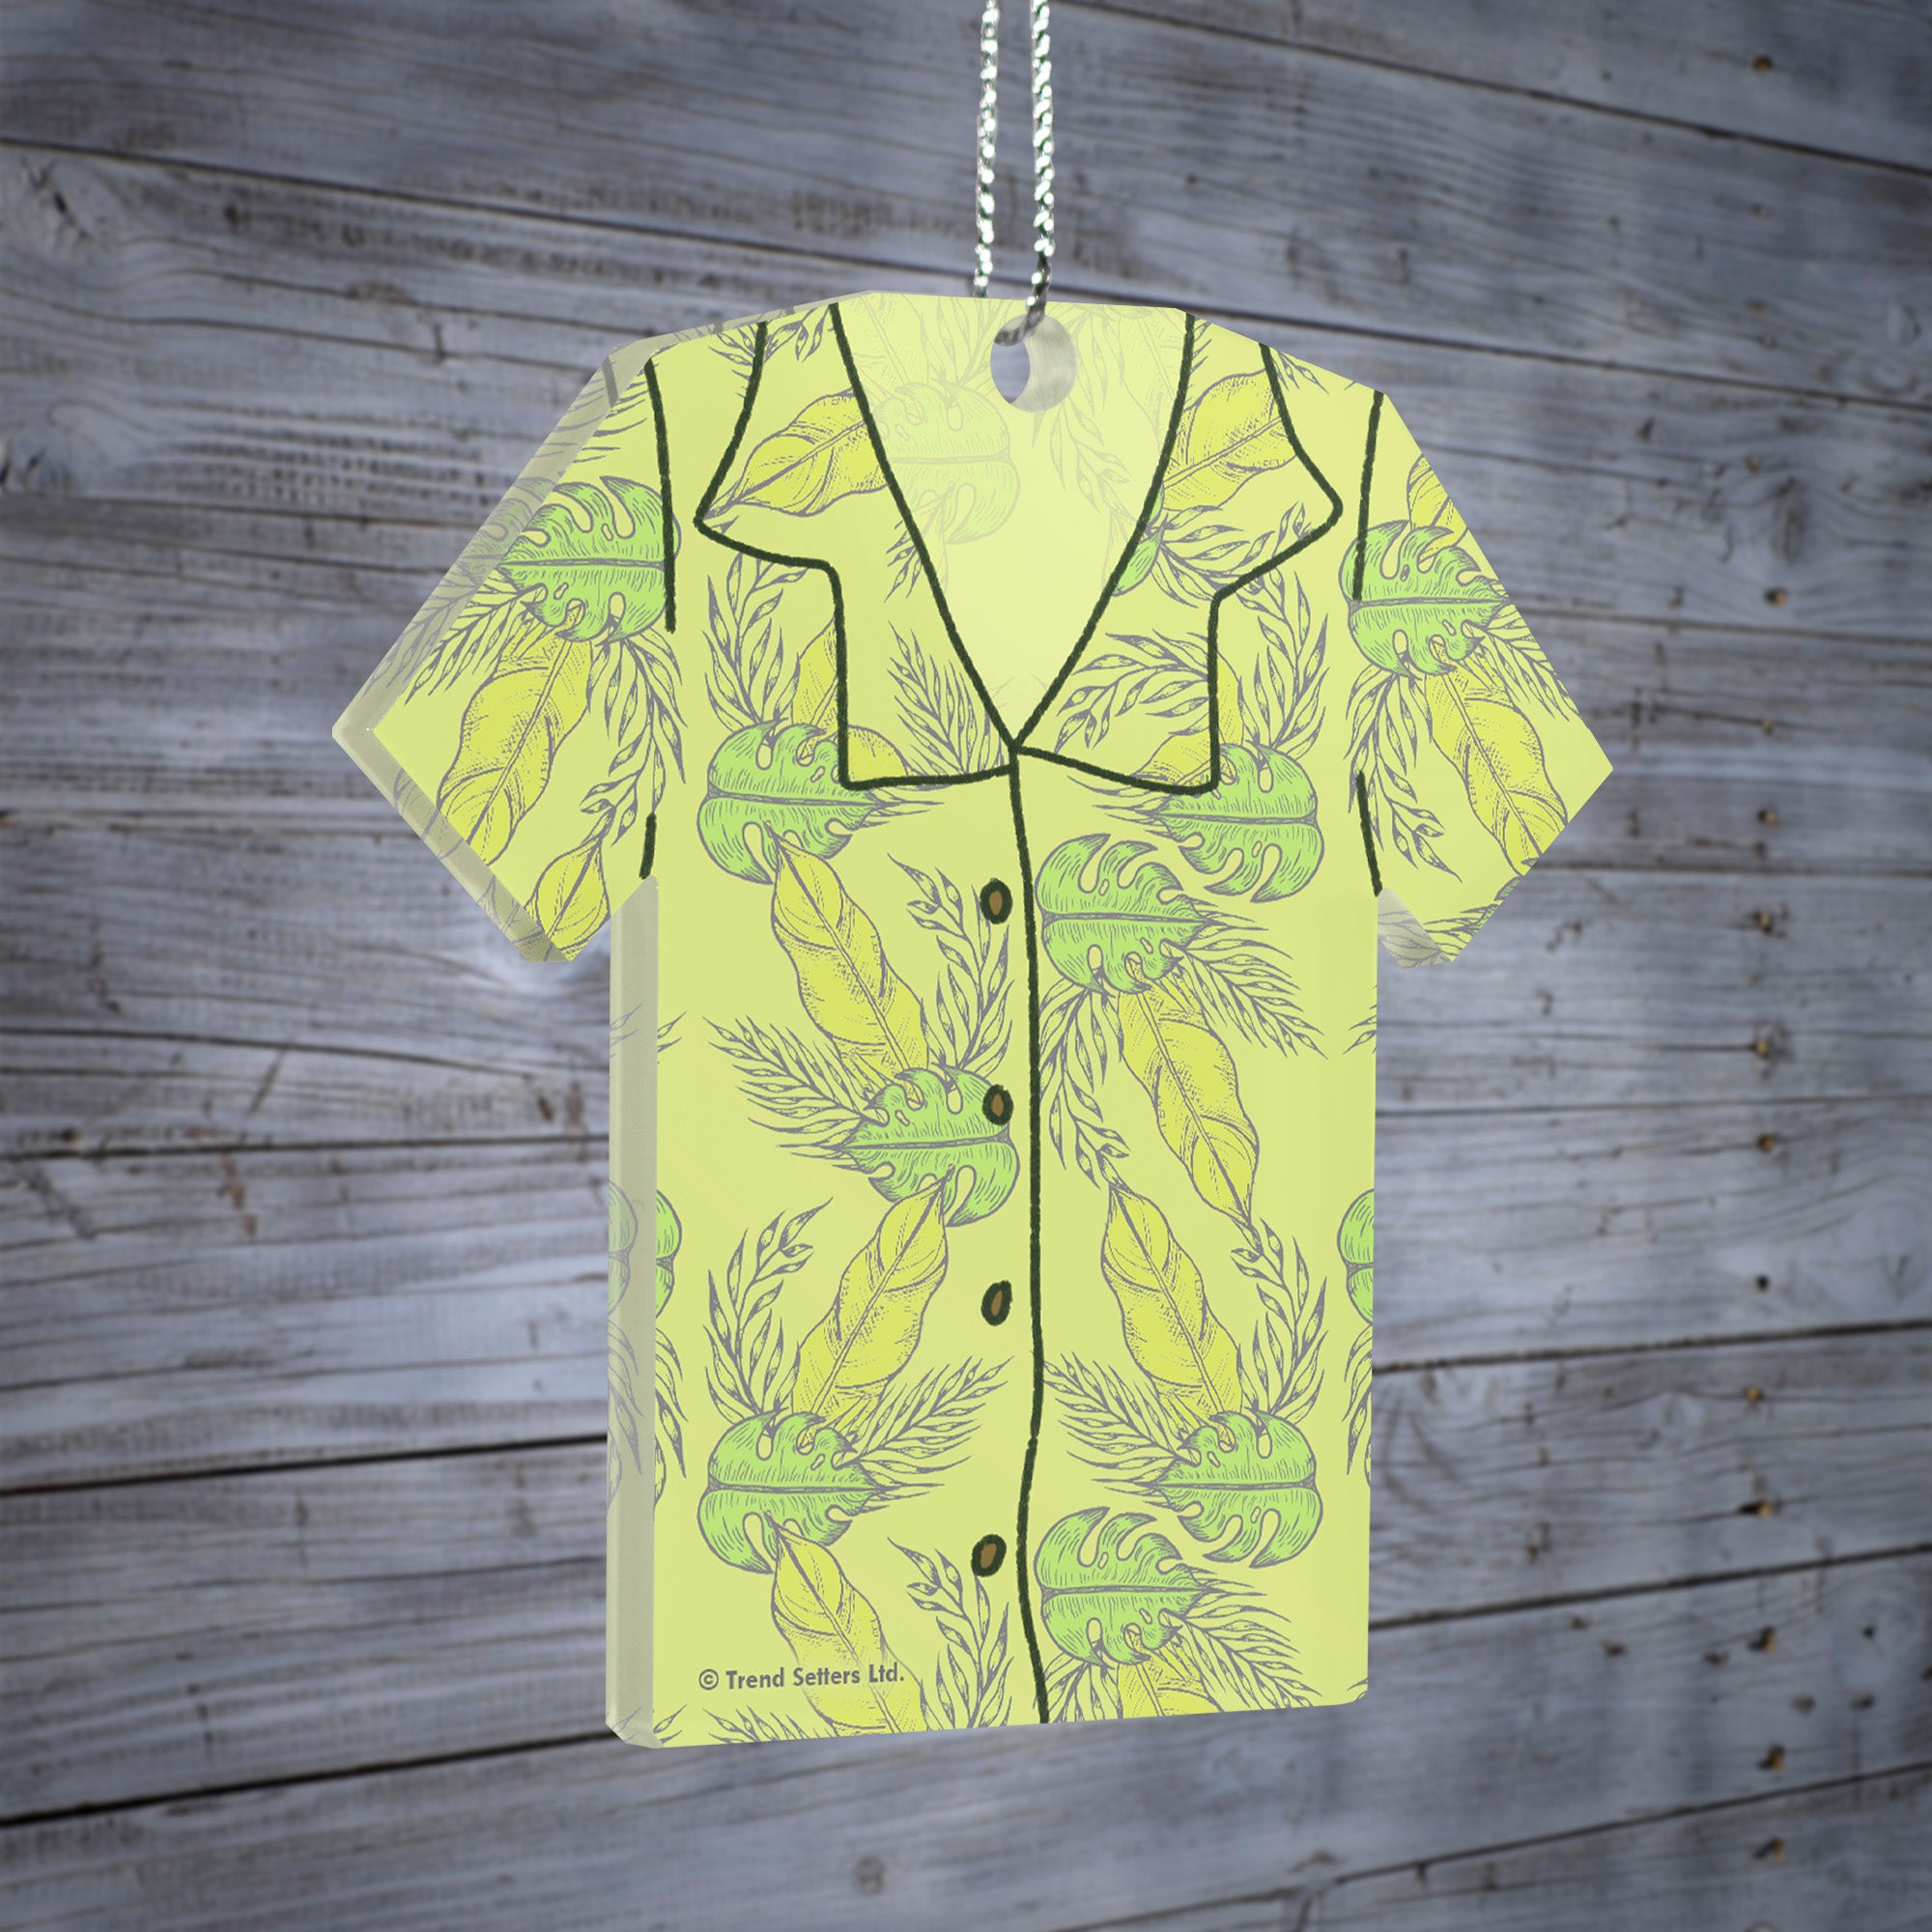 Vacation Collection (Hawaiian Shirt) Shaped Hanging Acrylic Print